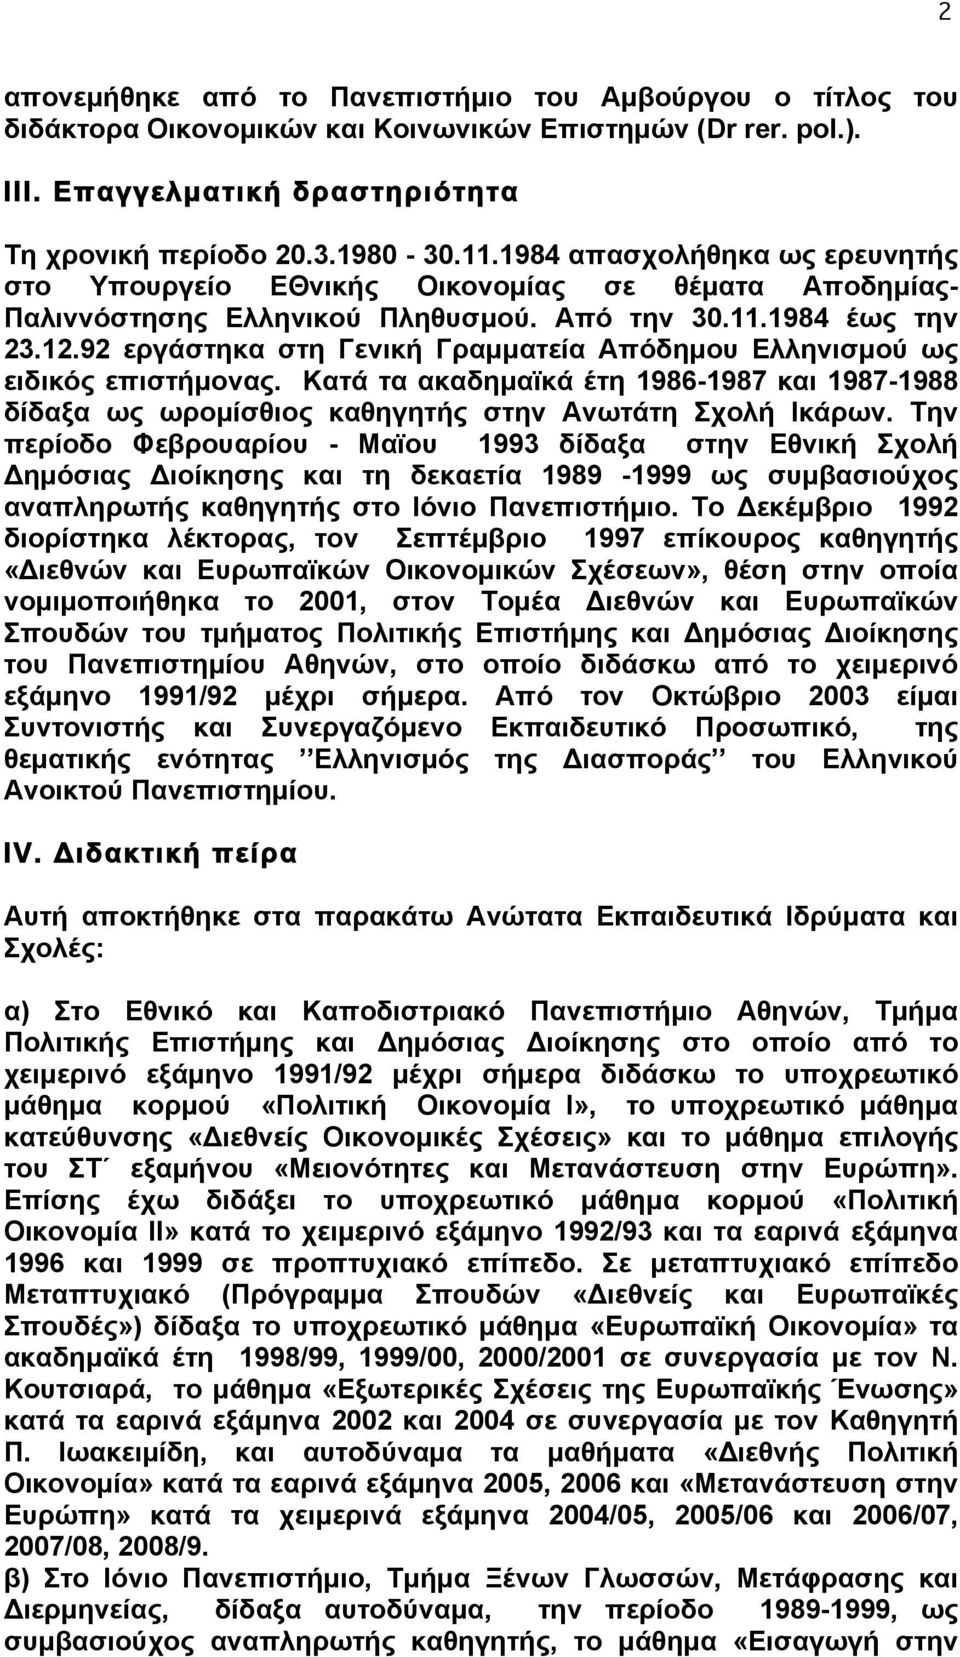 92 εργάστηκα στη Γενική Γραµµατεία Απόδηµου Ελληνισµού ως ειδικός επιστήµονας. Κατά τα ακαδηµαϊκά έτη 1986-1987 και 1987-1988 δίδαξα ως ωροµίσθιος καθηγητής στην Ανωτάτη Σχολή Ικάρων.